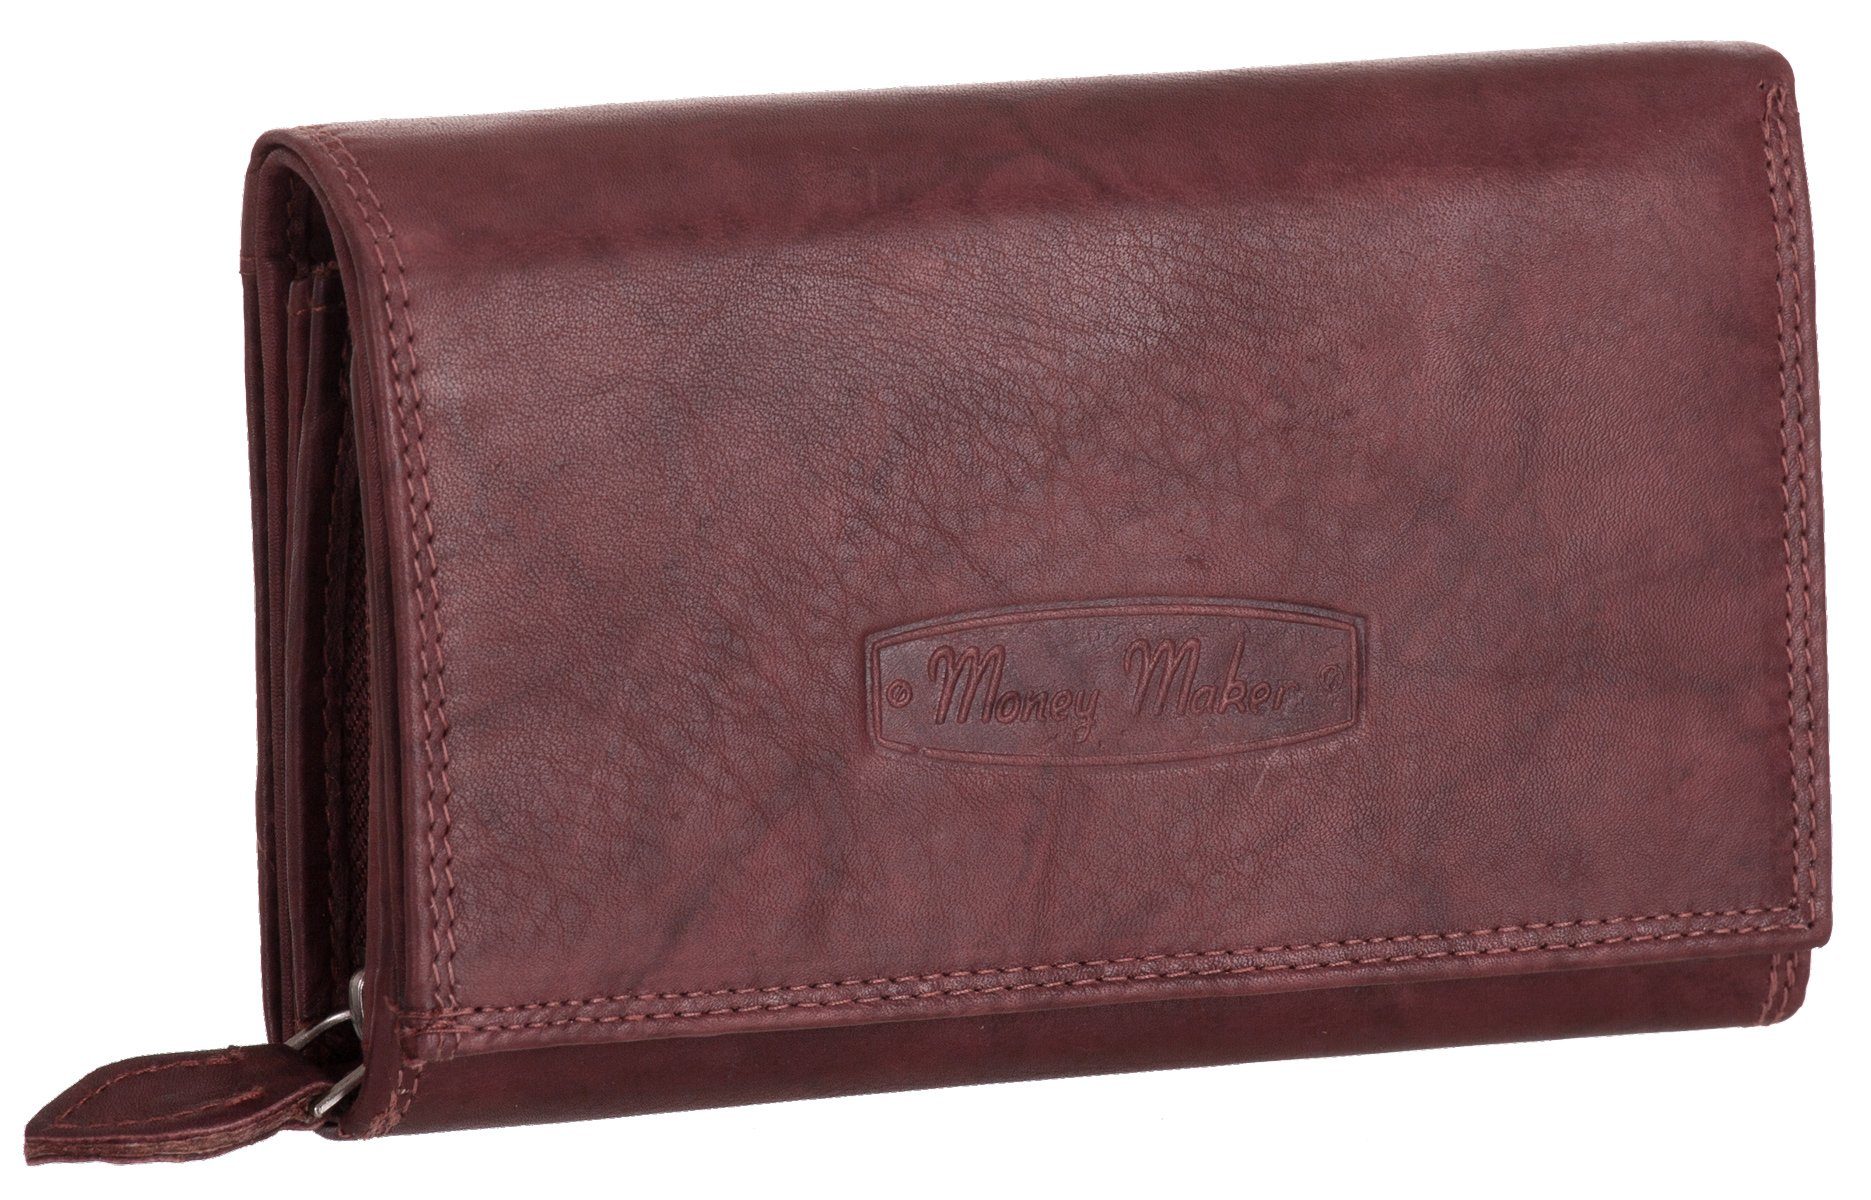 Frauen Geldbeutel Tan RFID-NFC Schutz Portmonee Große Geldbörse für Damen mit klippverschluss Portemonnaie Druckknopf Brieftasche